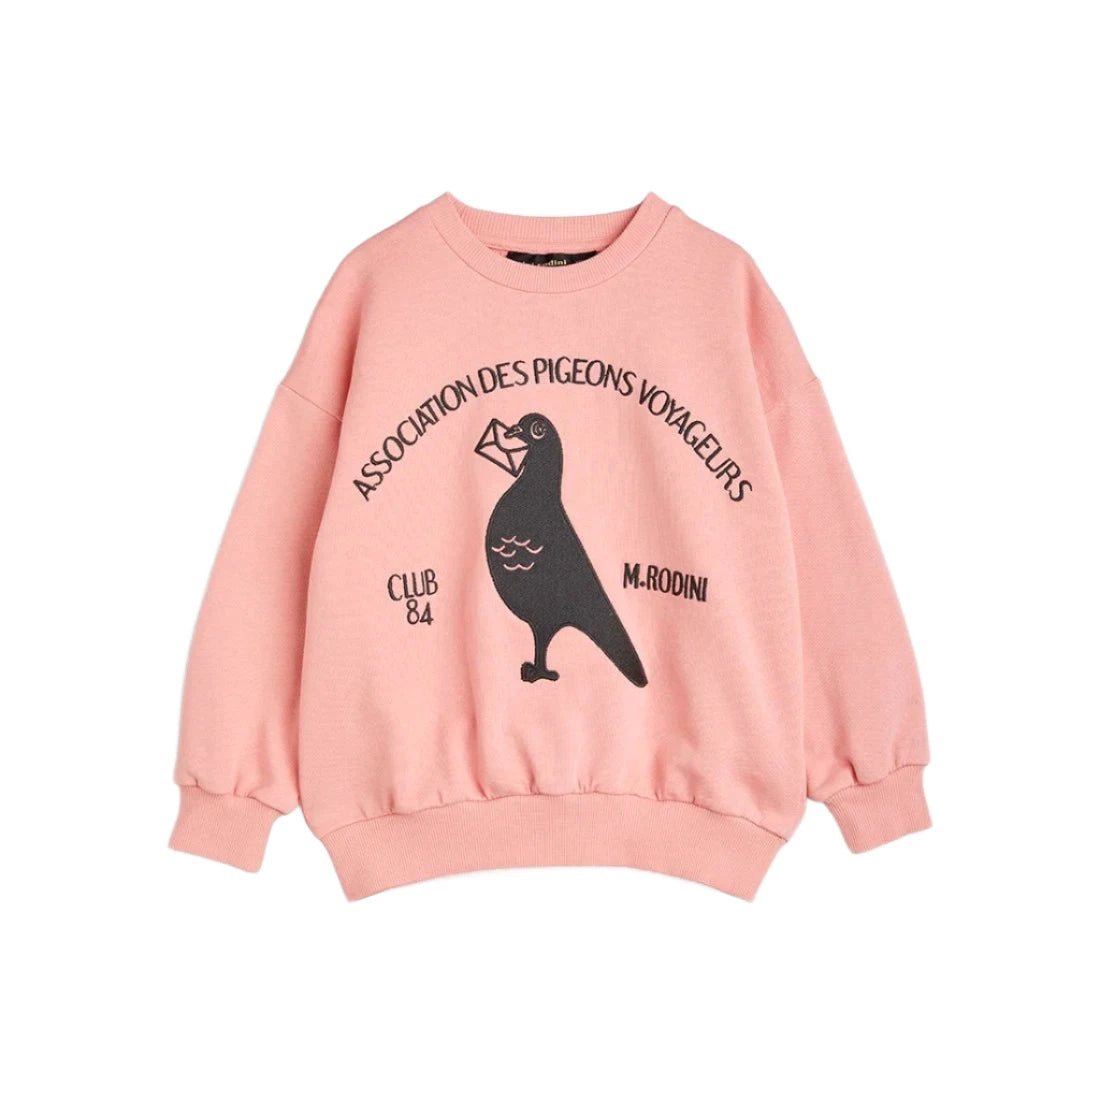 MINI RODINI Pigeon Embroidered Sweatshirt ALWAYS SHOW